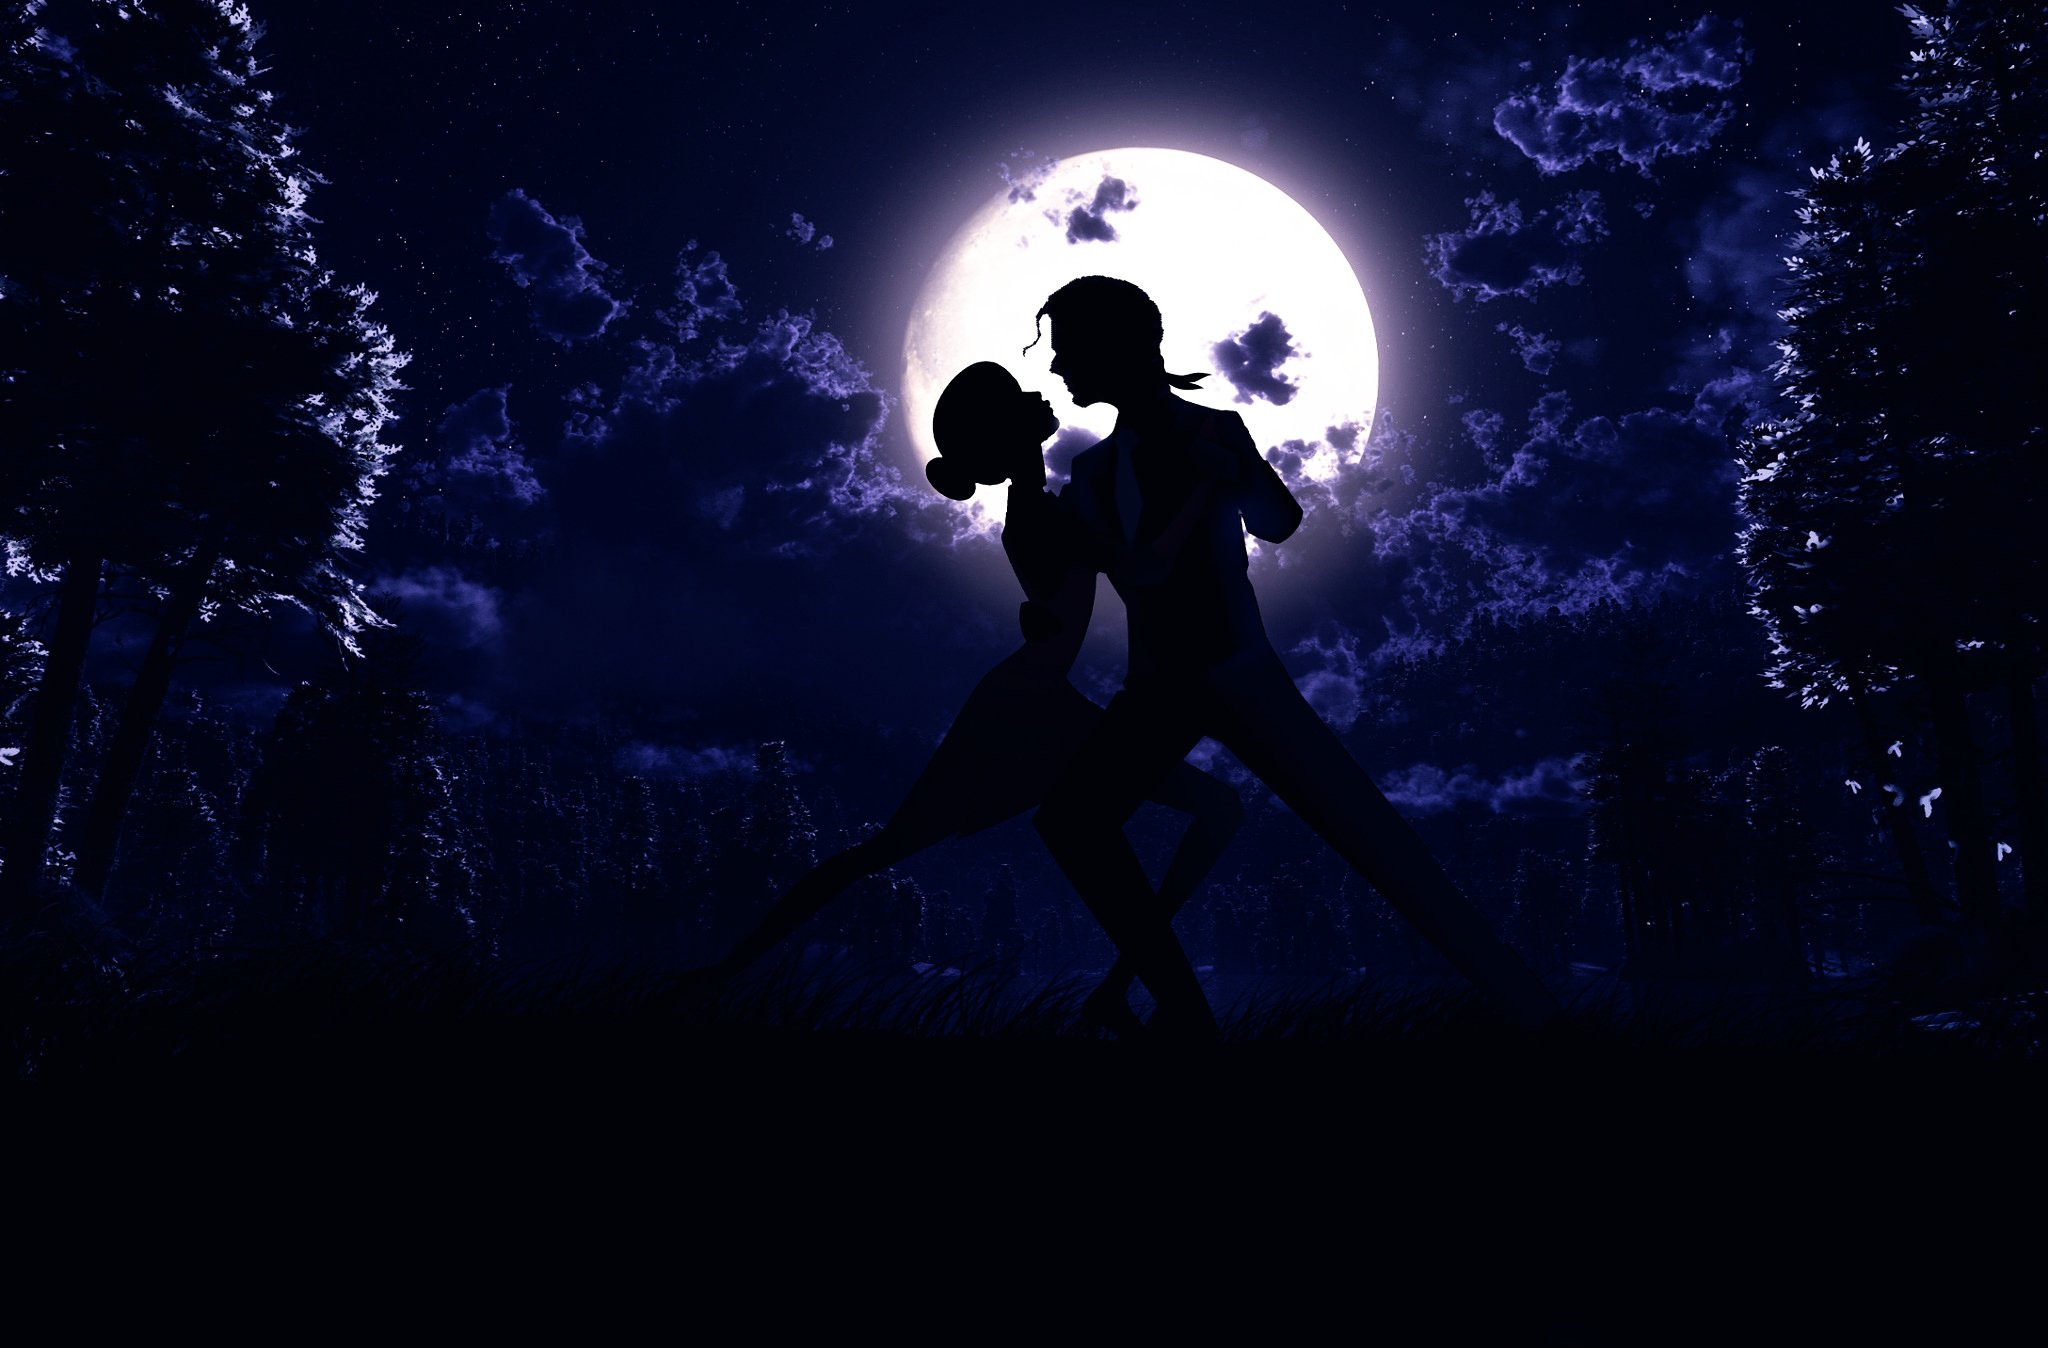 Танец песни день и ночь. Пара на фоне Луны. Пара на темном фоне. Танцы под луной. Парень и девушка под луной.